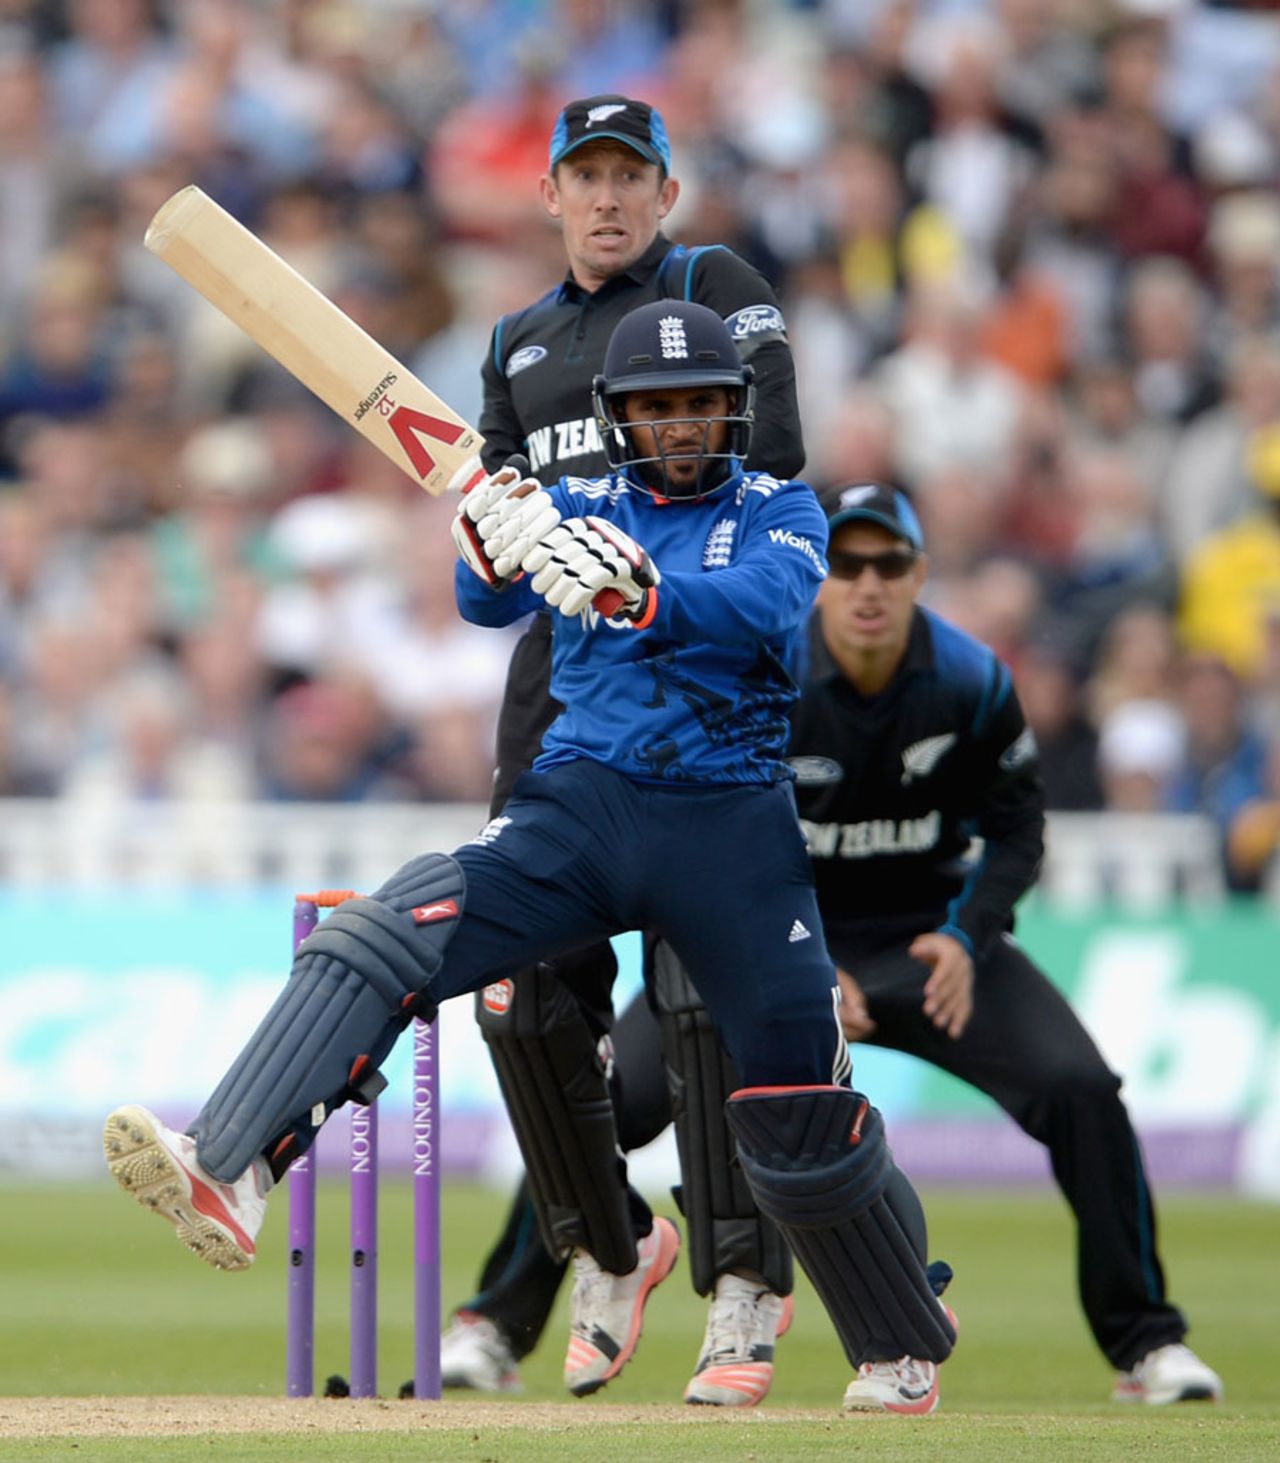 Adil Rashid played some enterprising shots, England v New Zealand, 1st ODI, Edgbaston, June 9, 2015